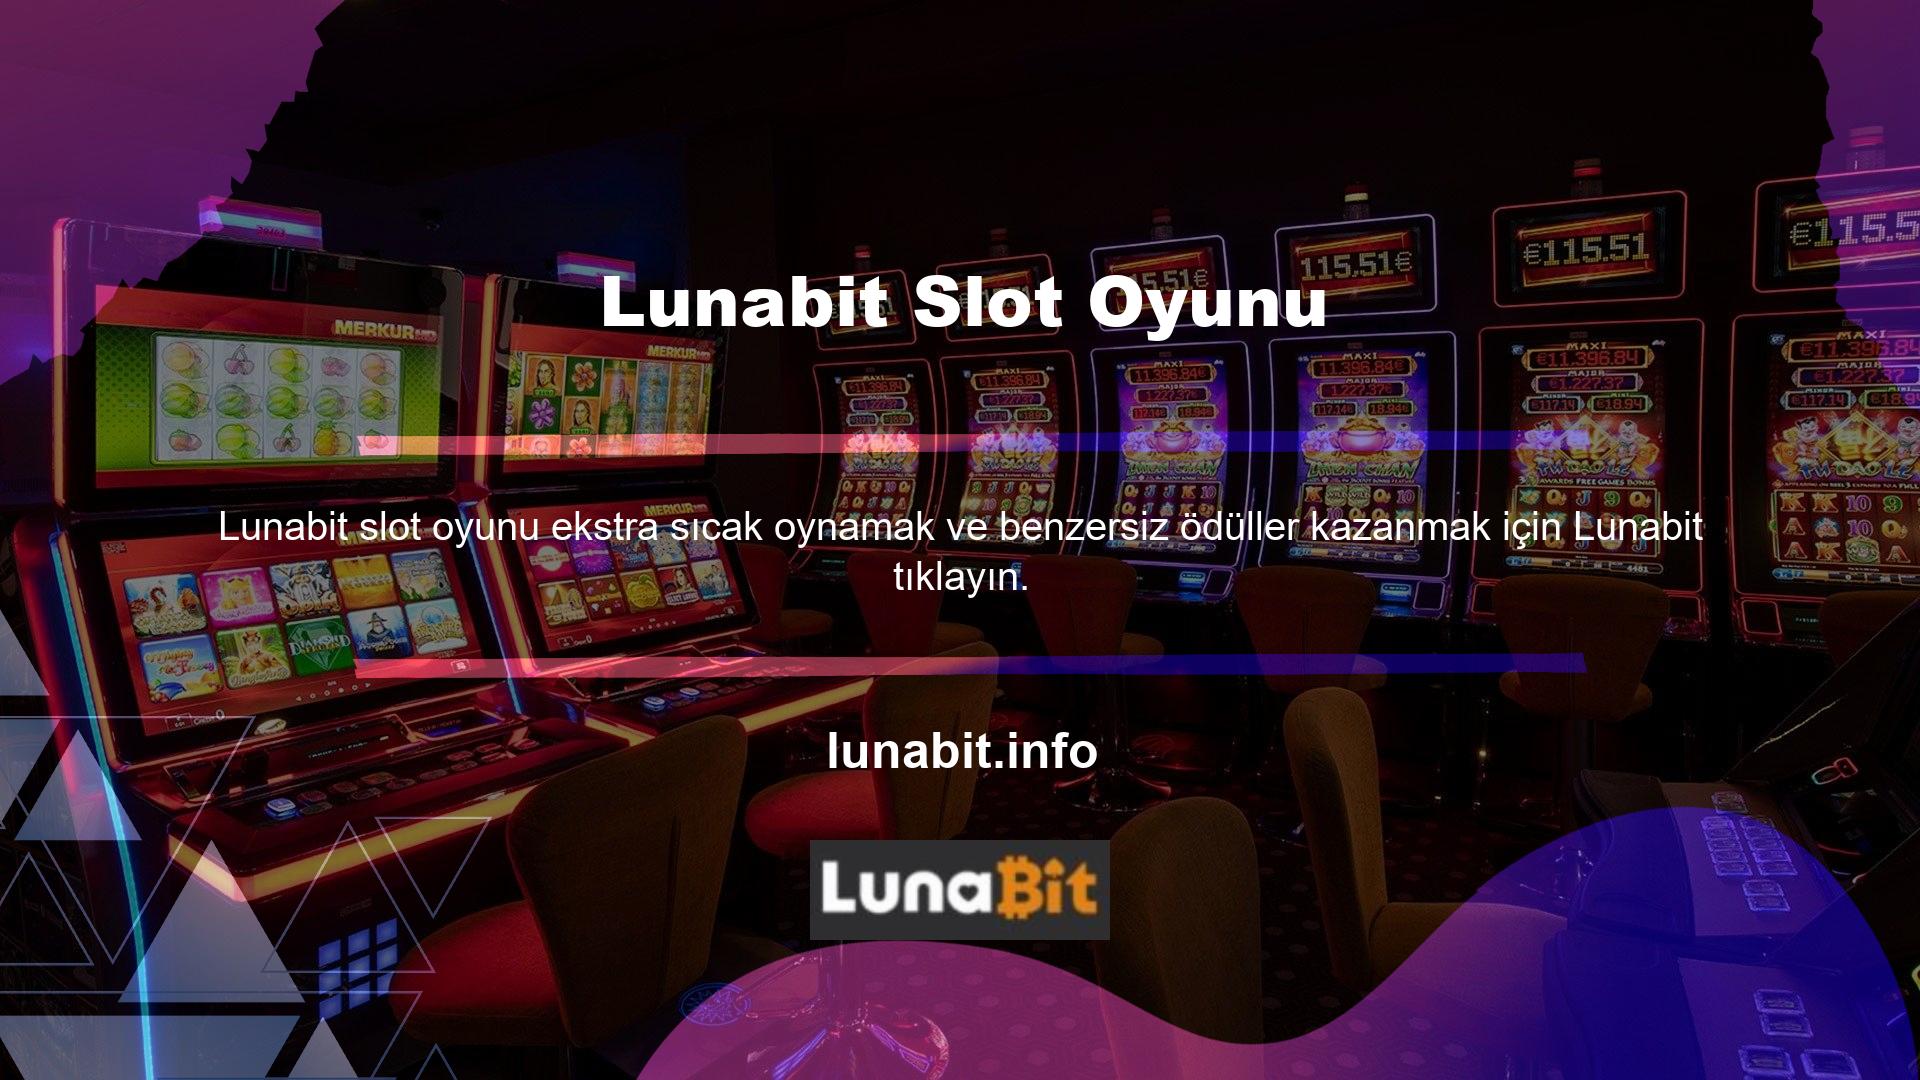 Lunabit, casino web siteleri için olmazsa olmazlardan biridir